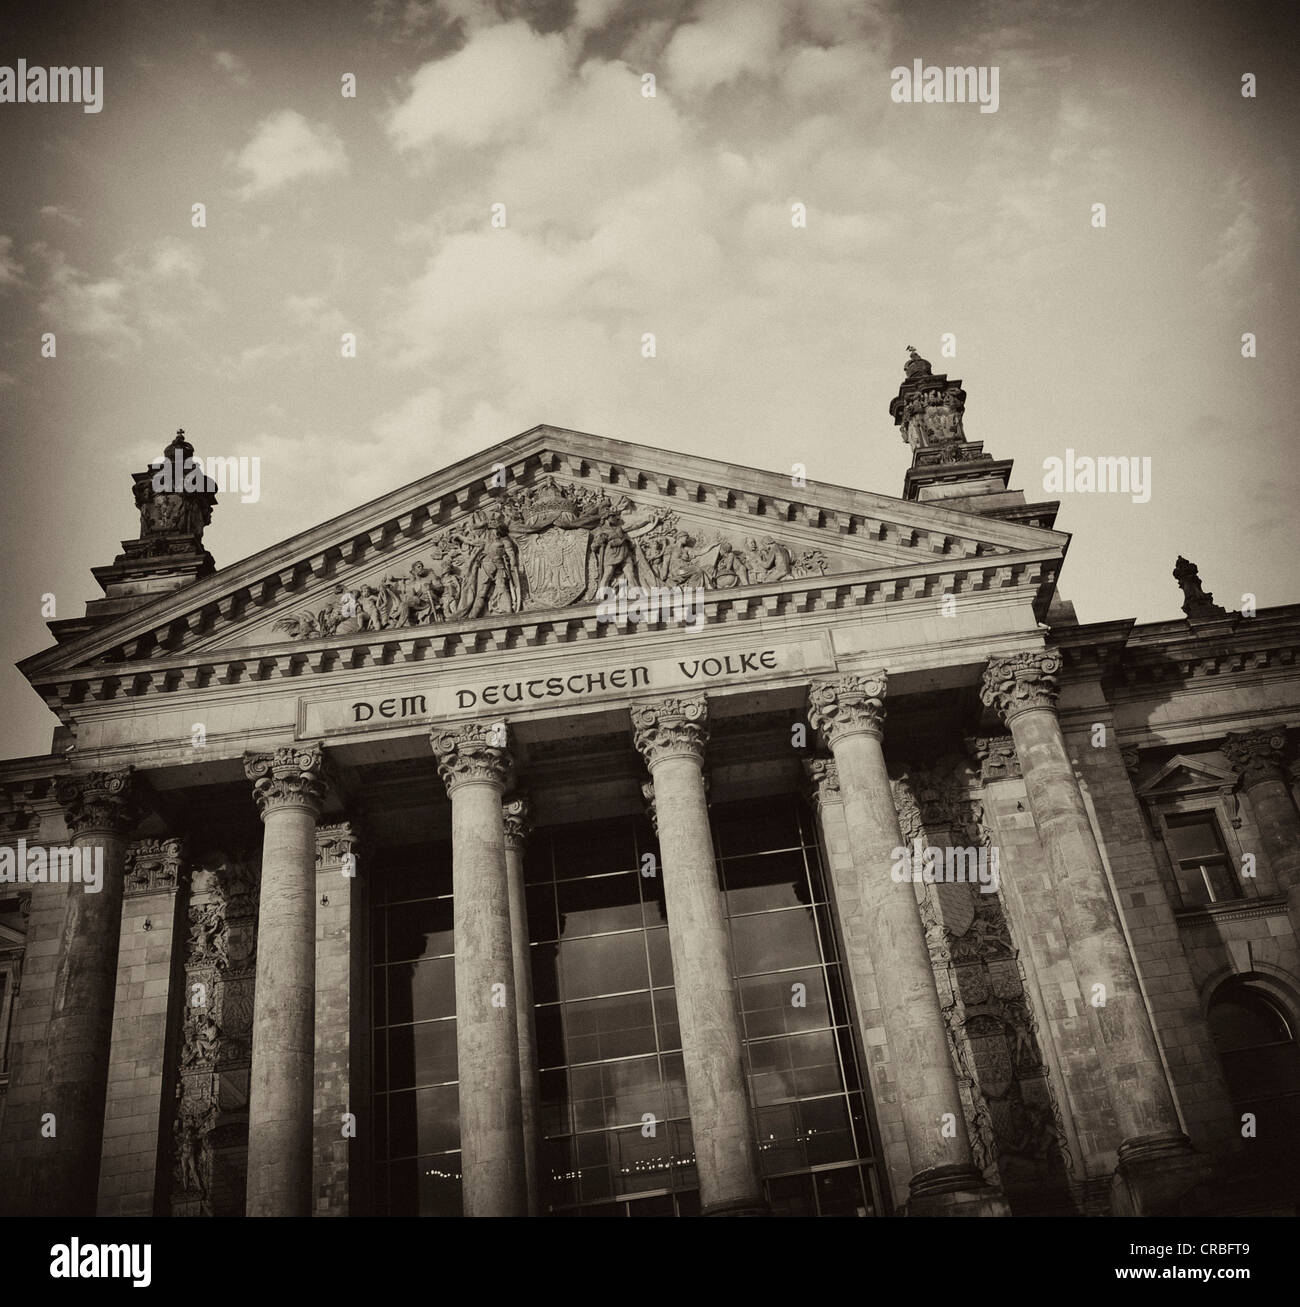 Immagine in bianco e nero, seppia-tonica, Edificio del Reichstag Parlamento tedesco, con l'iscrizione, Dem Deutschen Volke, Tedesco per Foto Stock